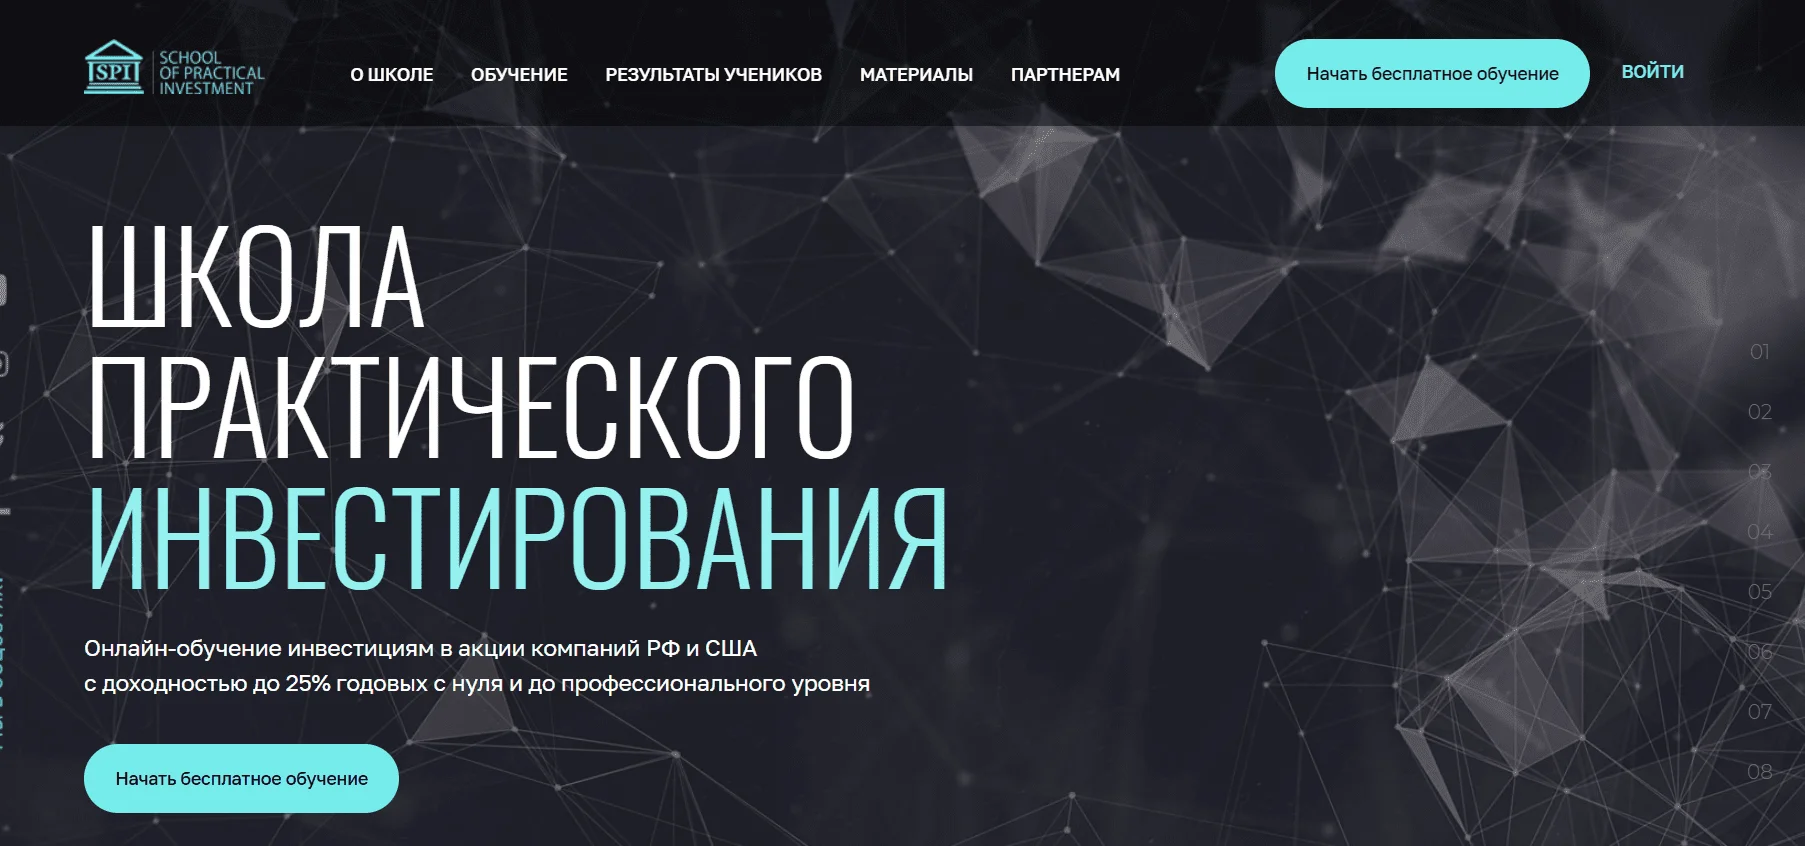 Сайт финансового проекта Федора Сидорова